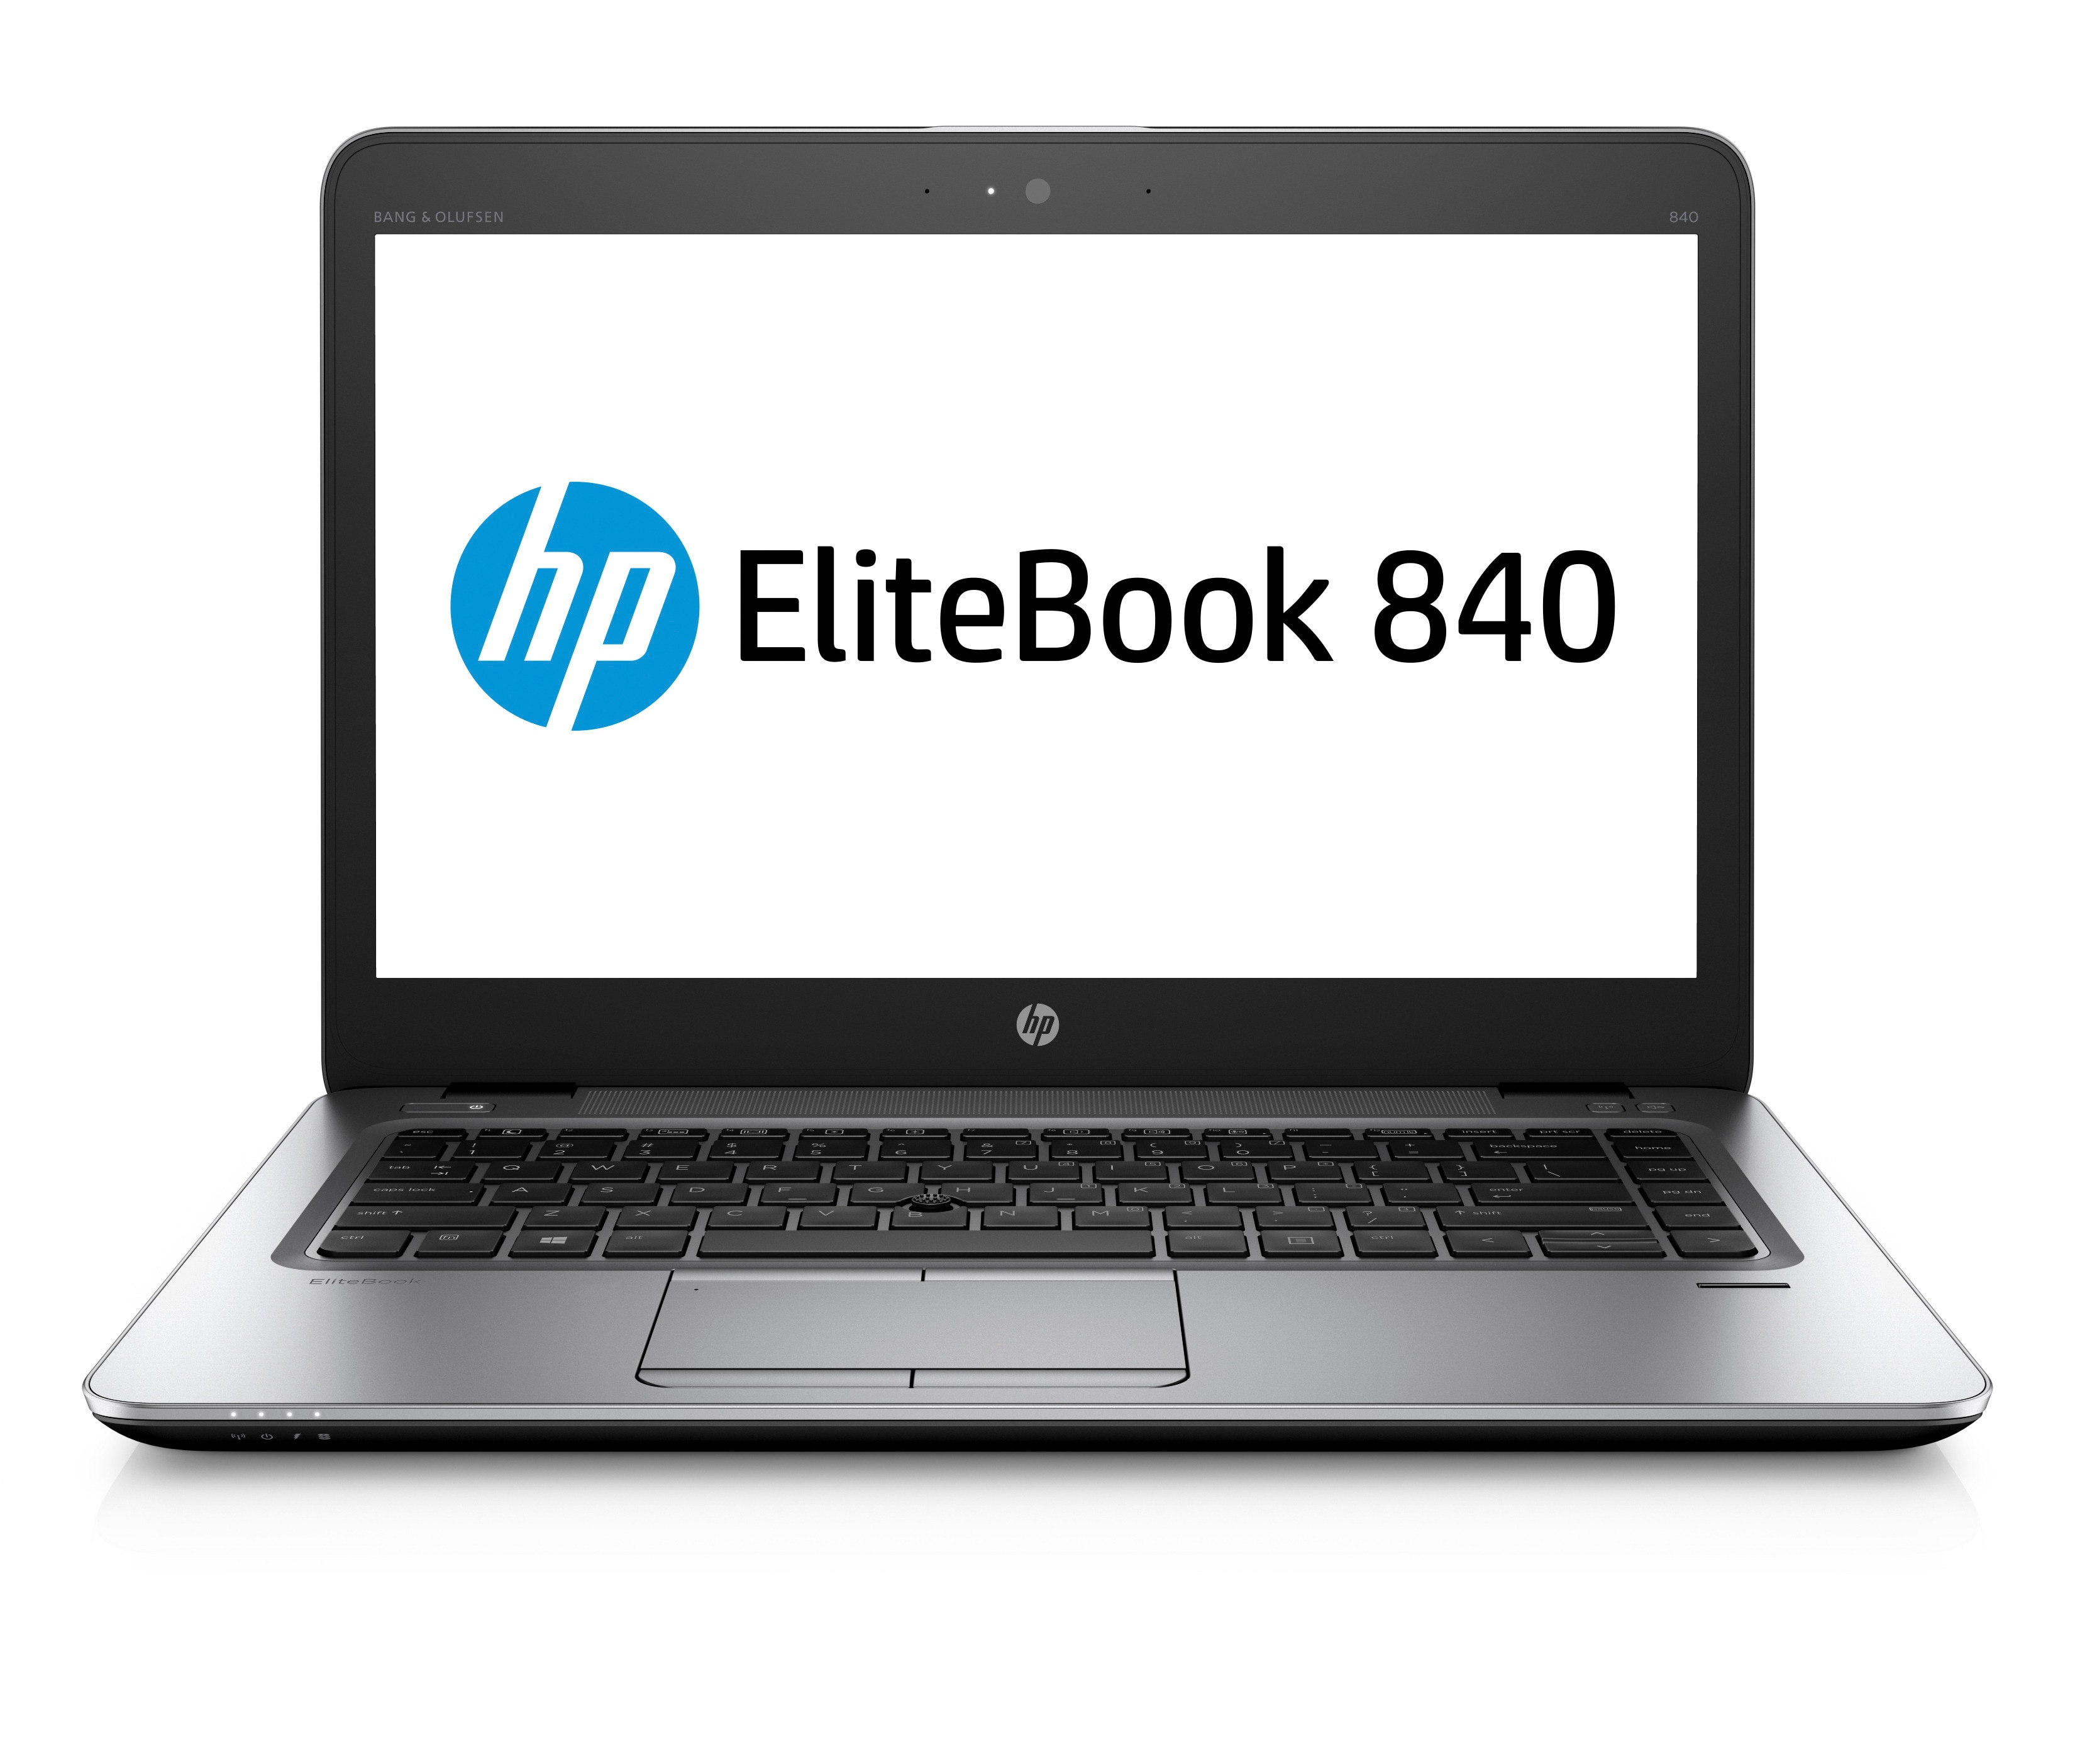 HP EliteBook 840 G4 Touch screen Laptop Core i7 7th Gen 8GB RAM 256GB SSD Win 103